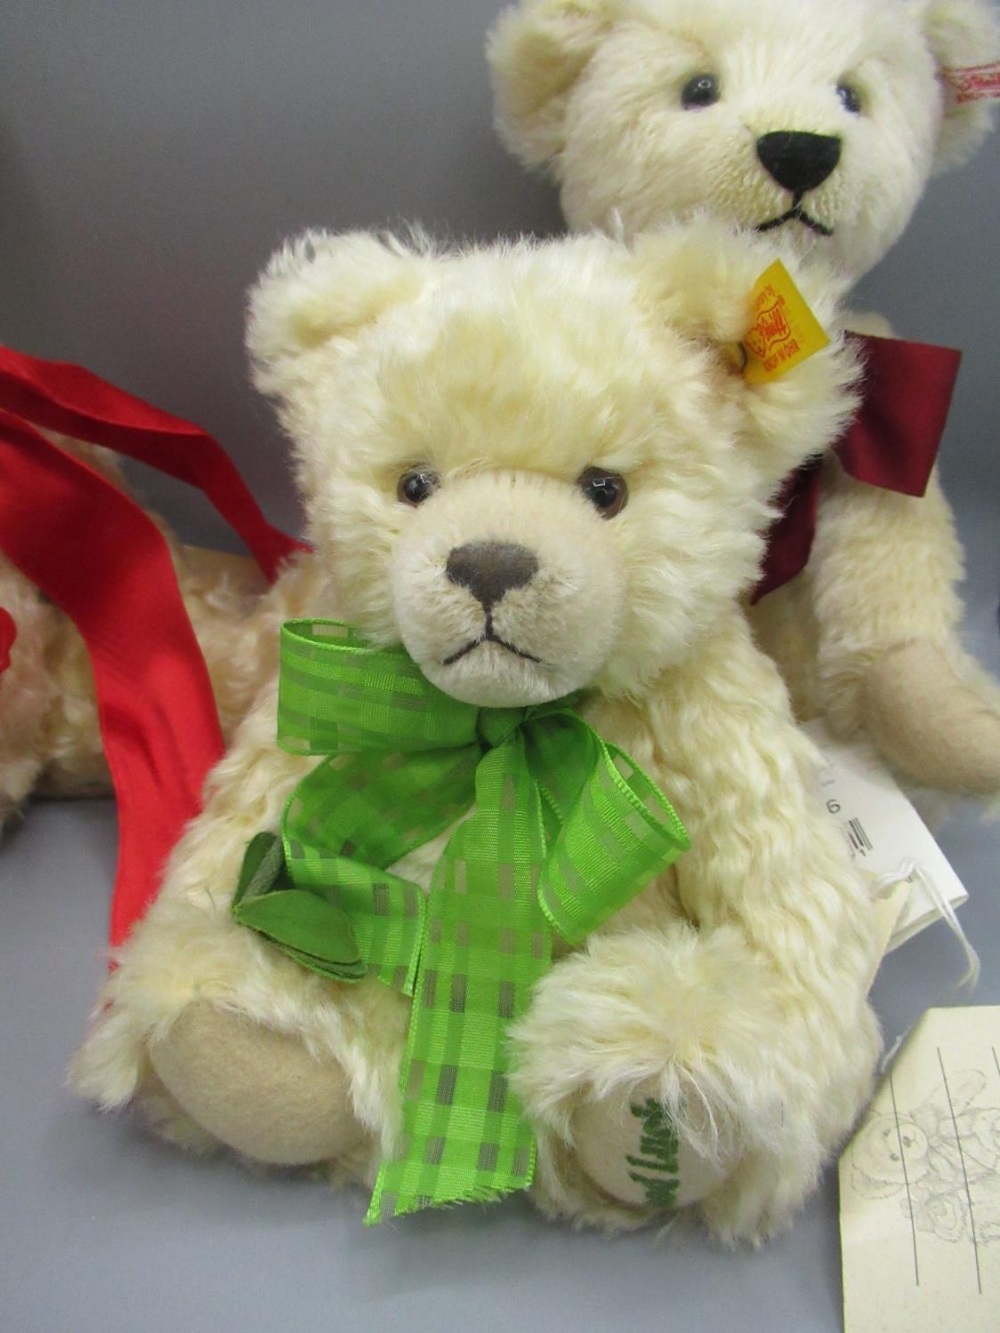 Steiff Good luck "Glucksbringer" bear in blonde mohair, H21cm, a Steiff Flynn soft plush teddy bear, - Image 2 of 2